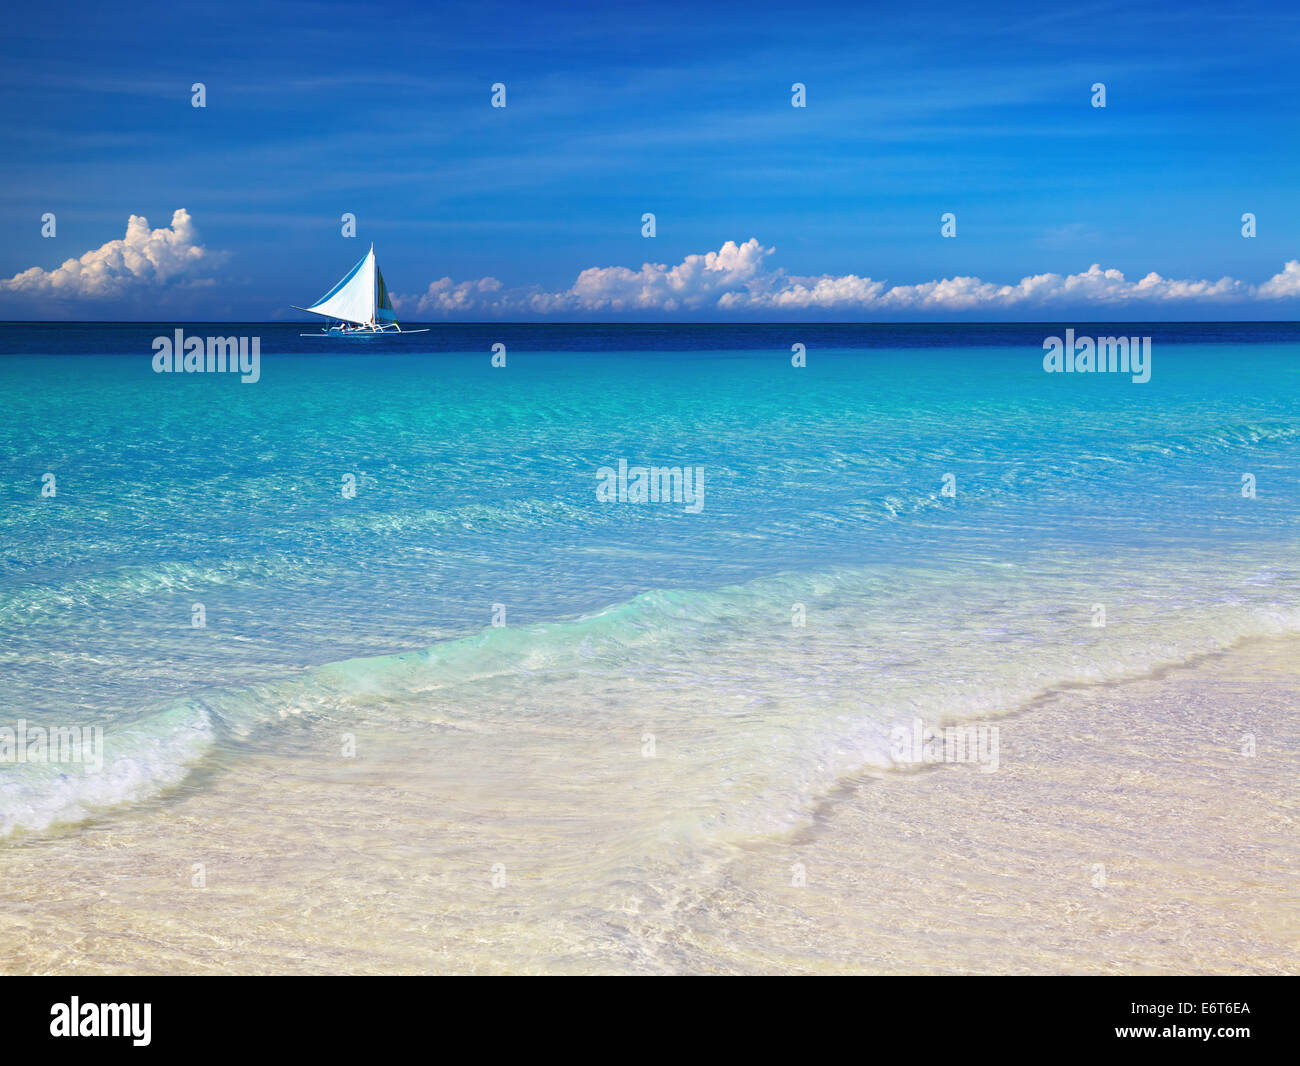 Tropical beach, Boracay island, Philippines Stock Photo